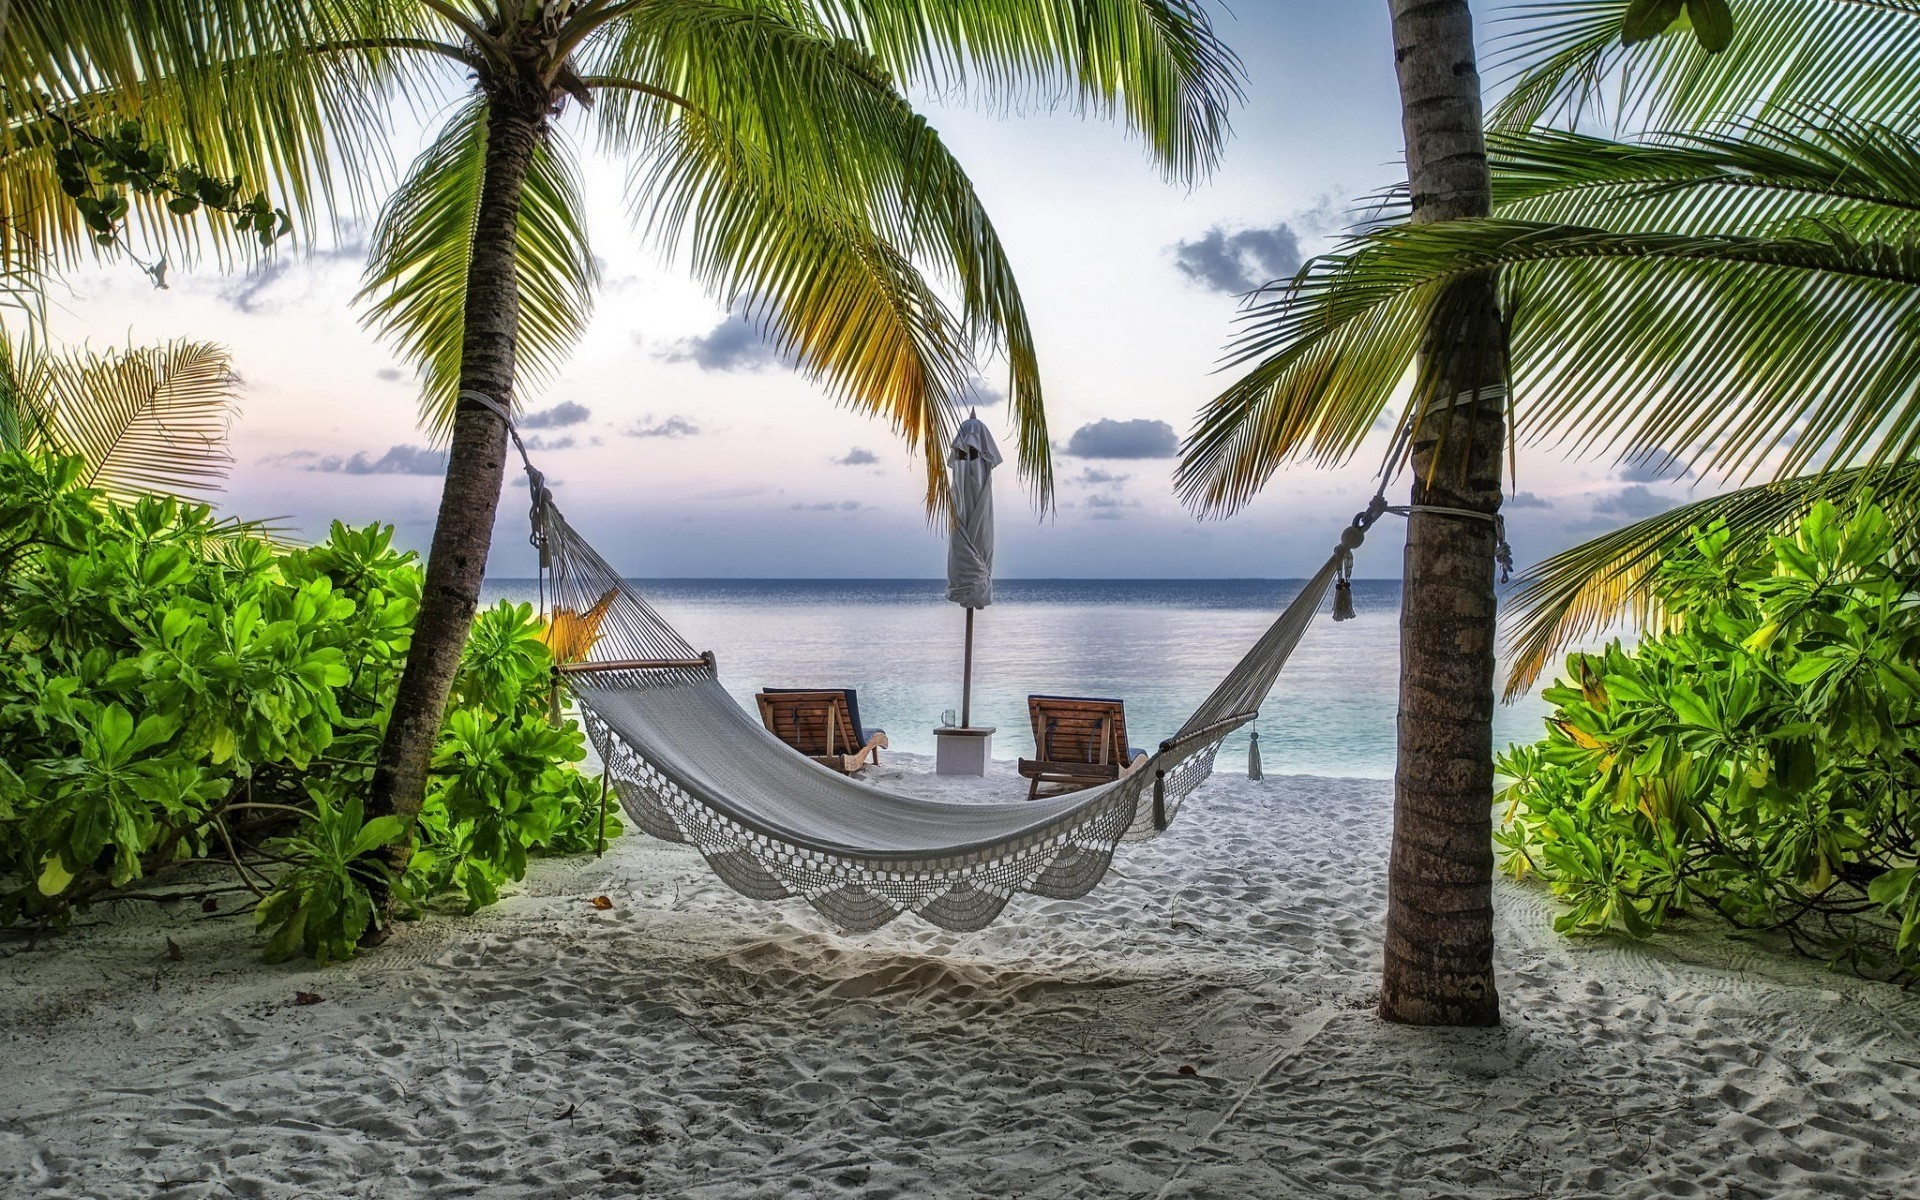 пейзажи тропический ладони пляж курорт лето отпуск релаксация кокосовое остров рай океан песок путешествия моря воды идиллия экзотические бирюза солнце стул пальмы